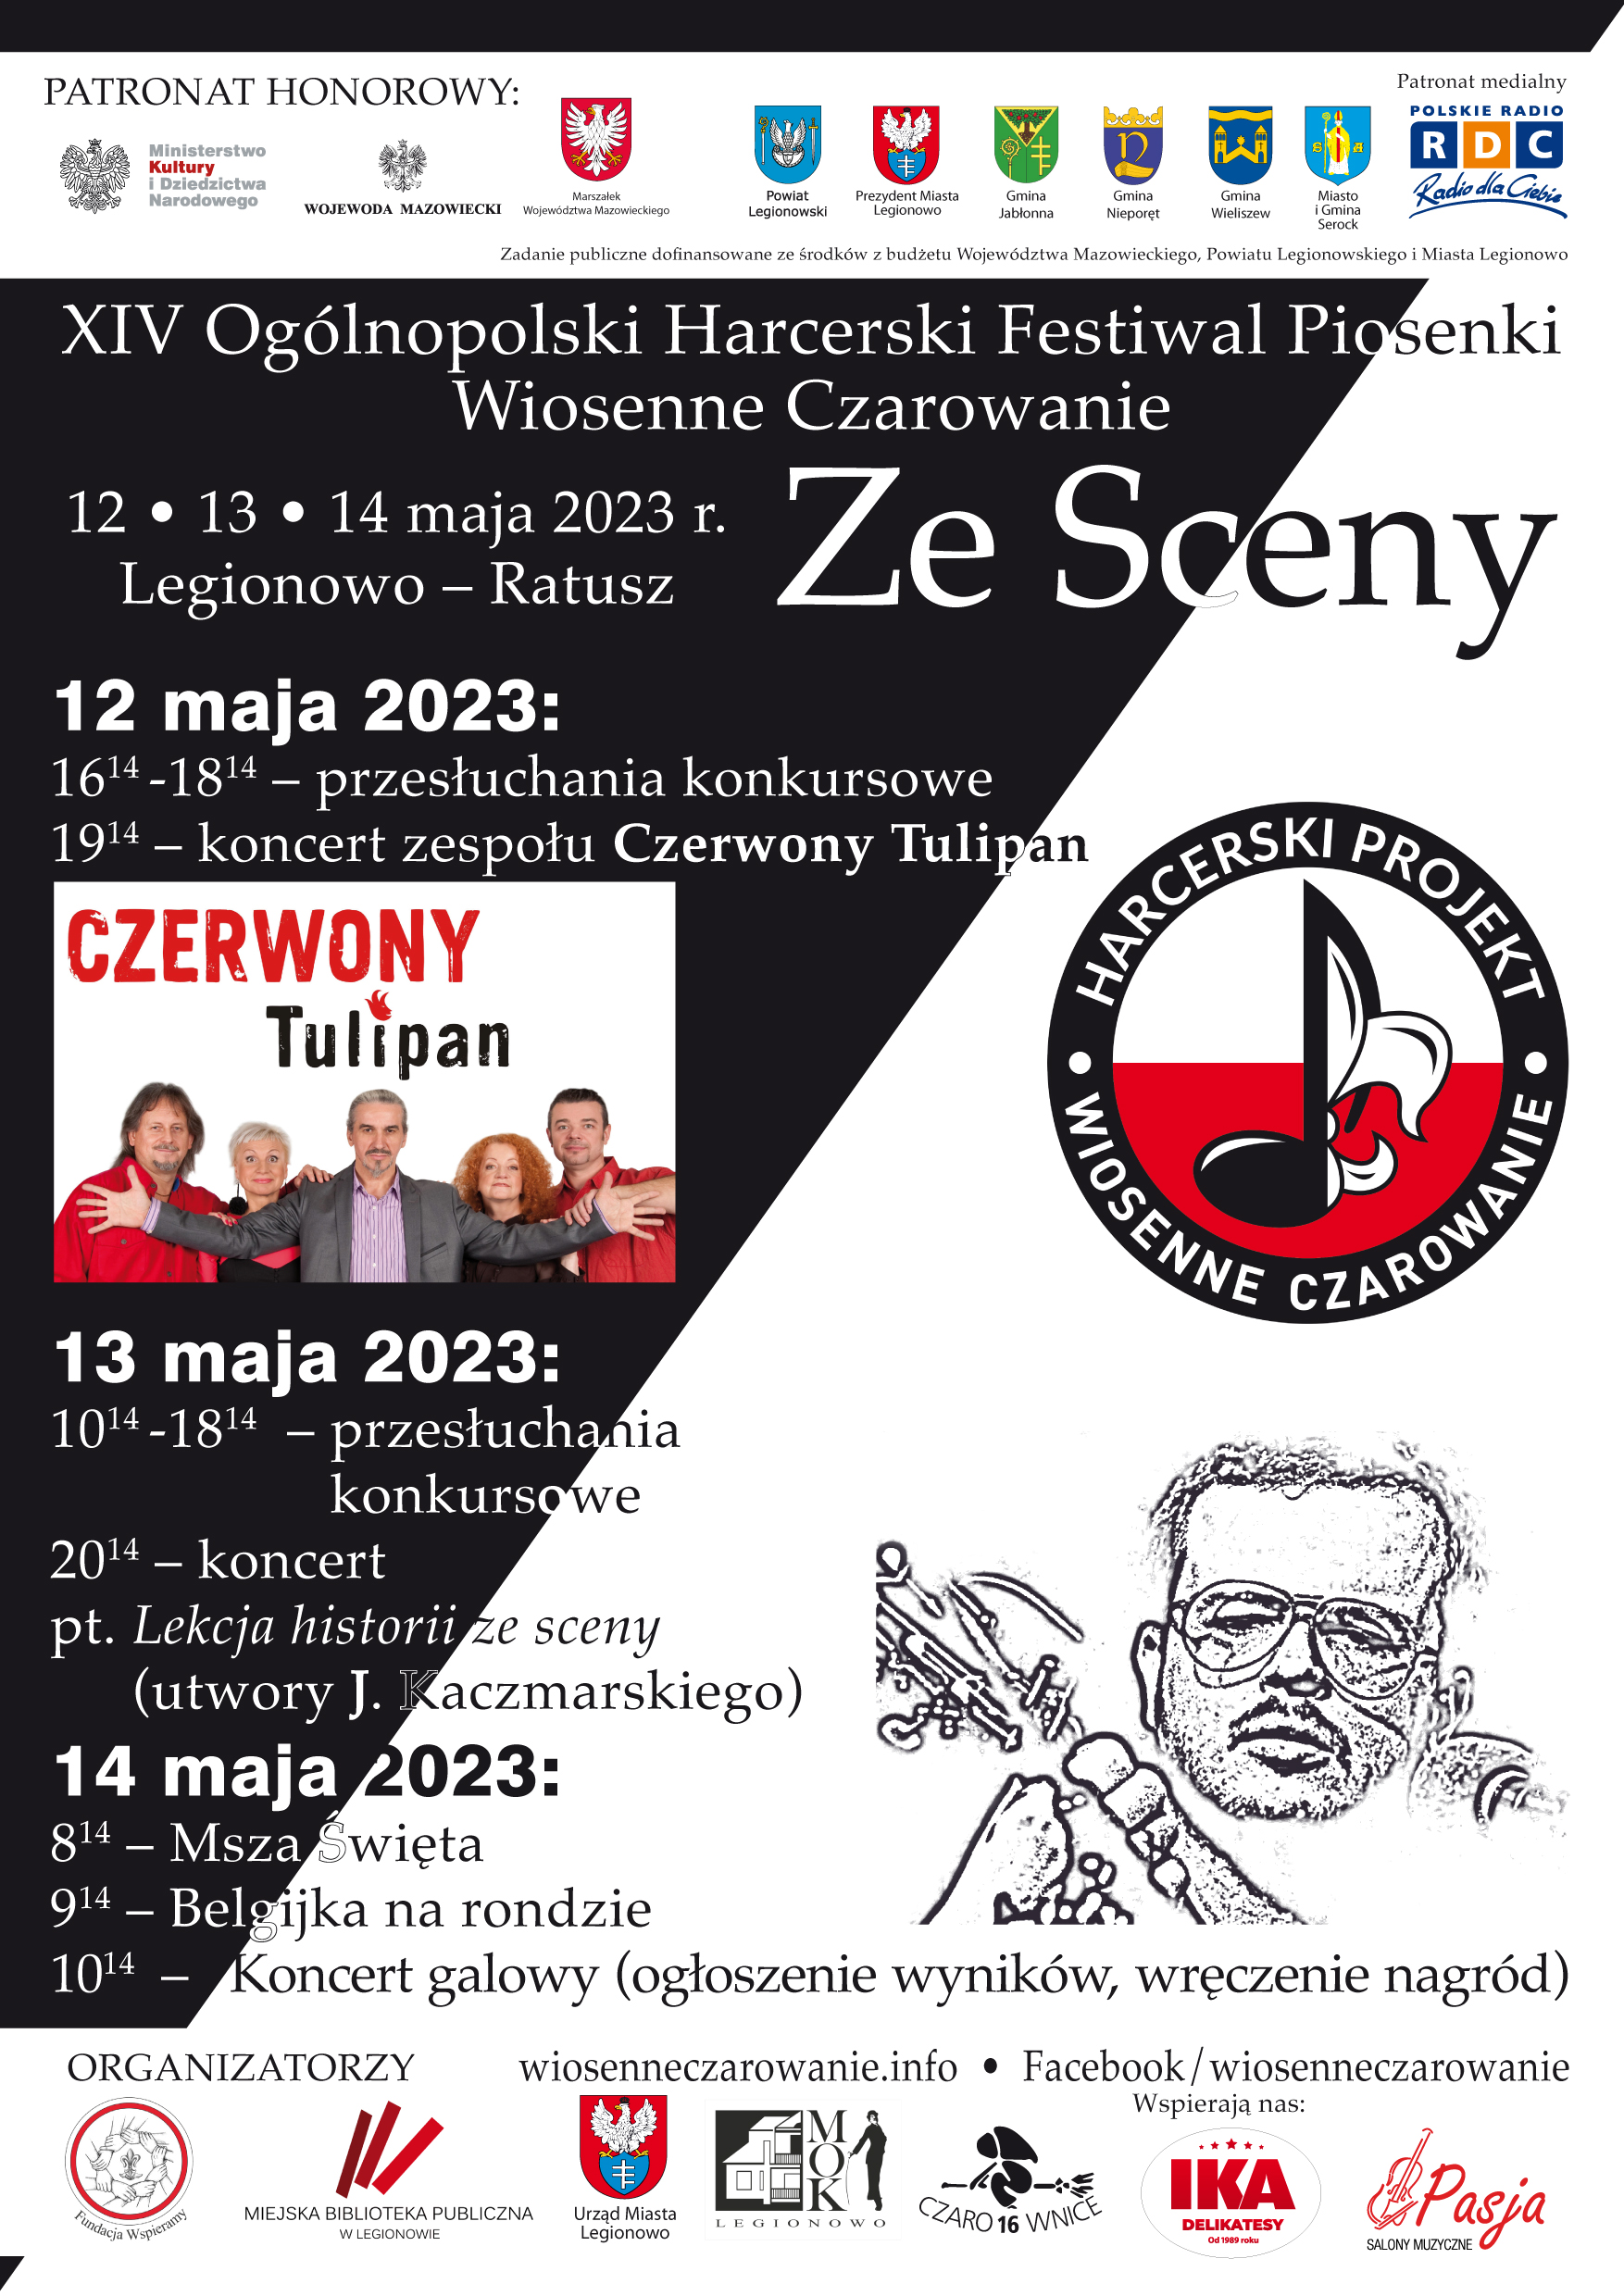 Plakat informujący o XIV Ogólnopolskim Harcerskim Festiwalu Piosenki Harcerskiej Wiosenne Czarowanie